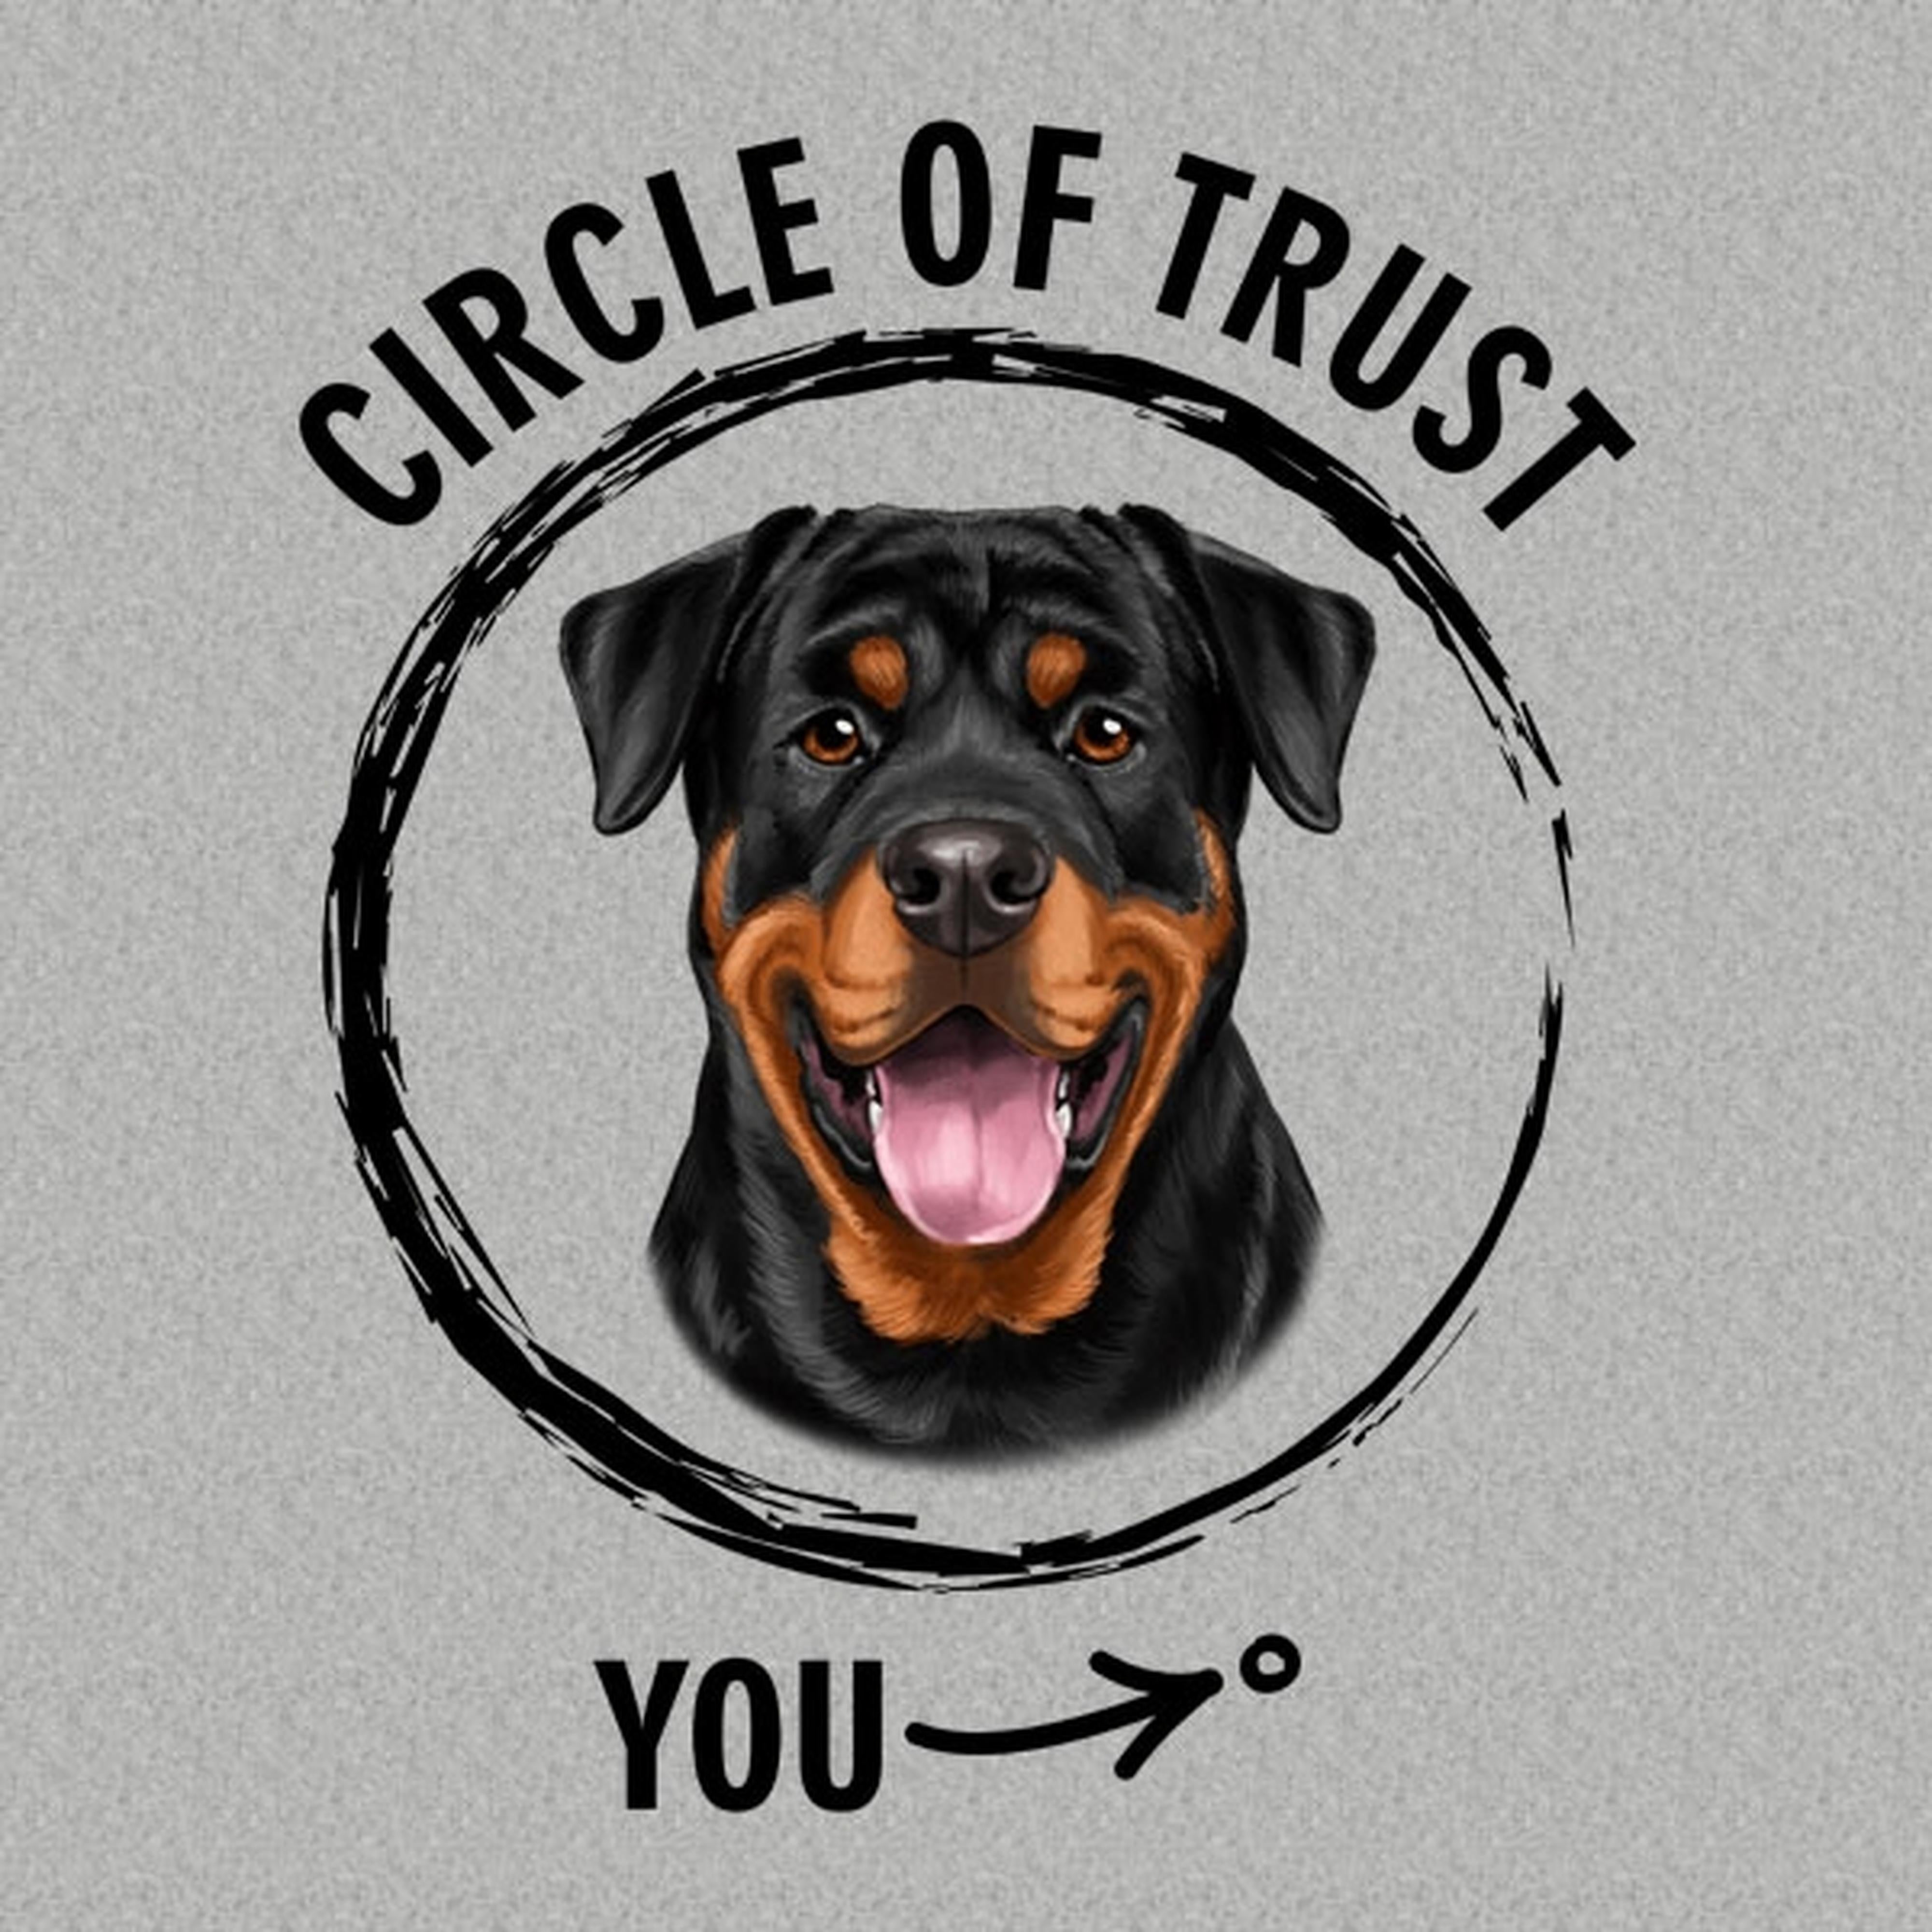 Circle of trust (Rottweiler) - T-shirt